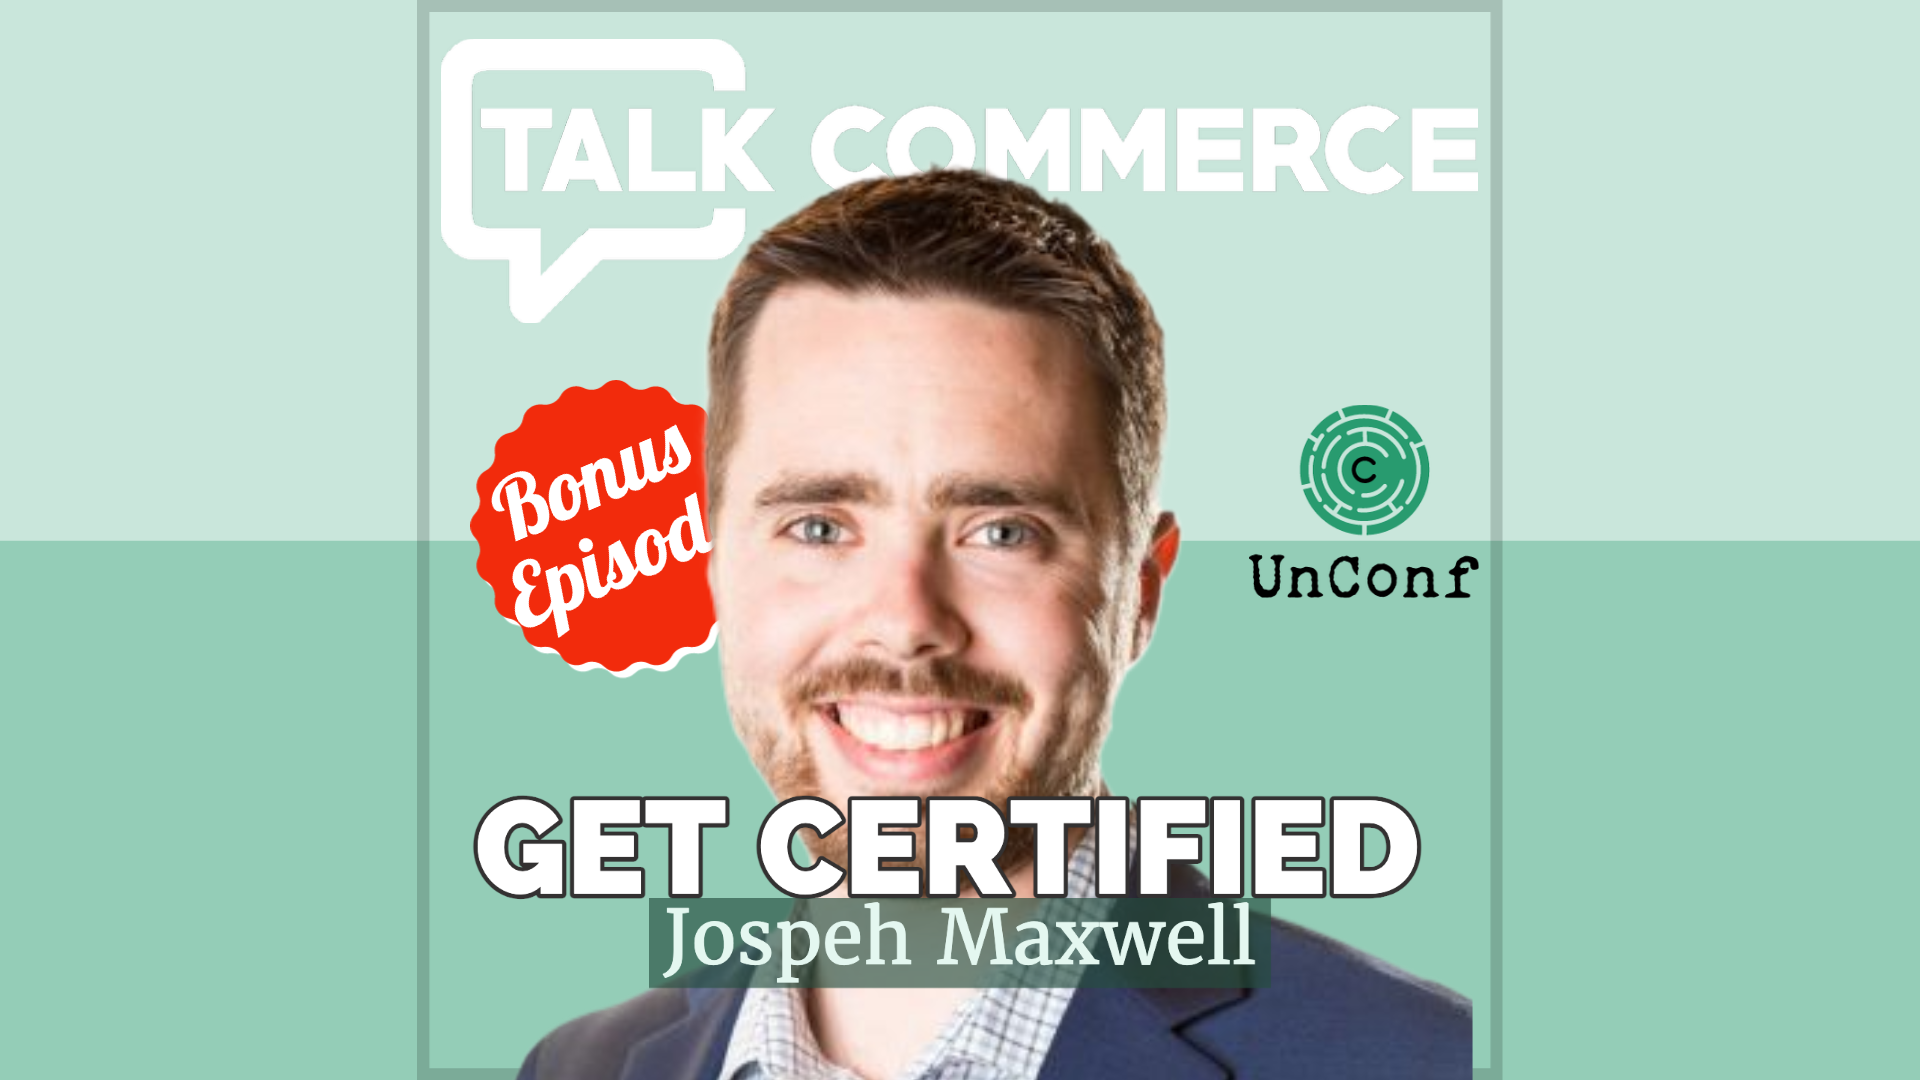 Talk-Commerce UnConf joseph maxwell